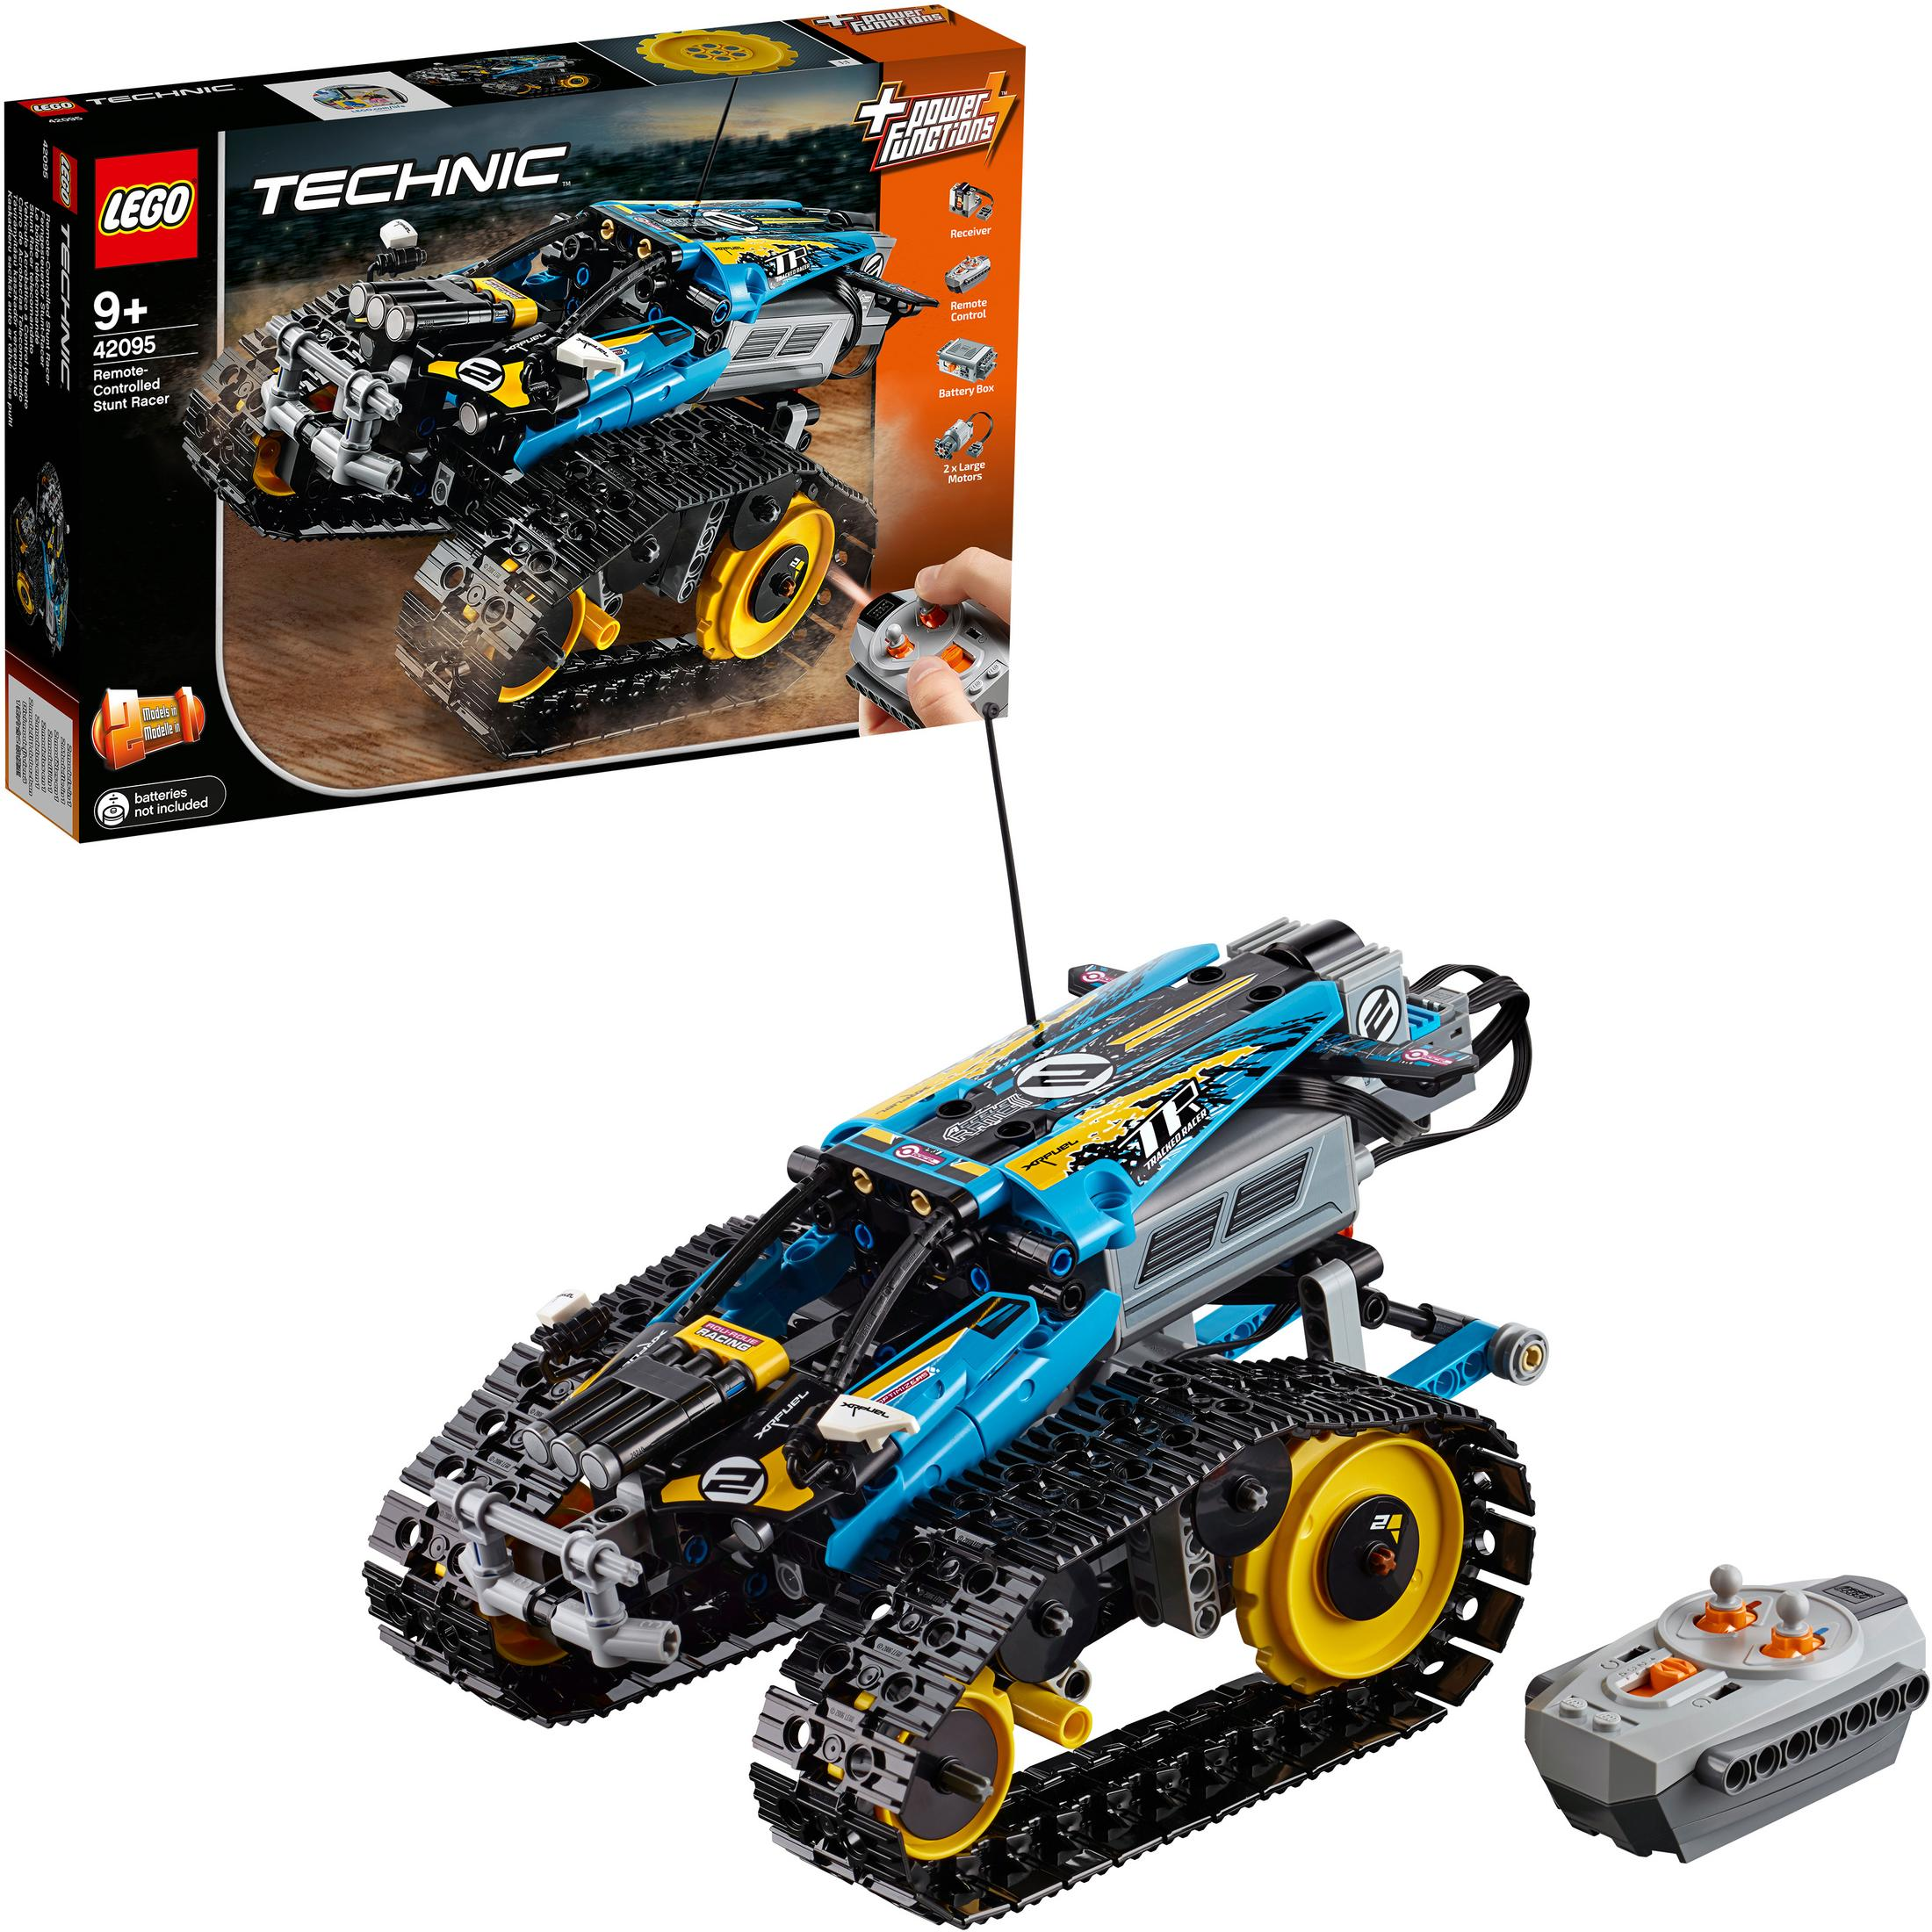 TECHNIC LEGO Bausatz, STUNT-RACER FERNGESTEUERTER Mehrfarbig 42095